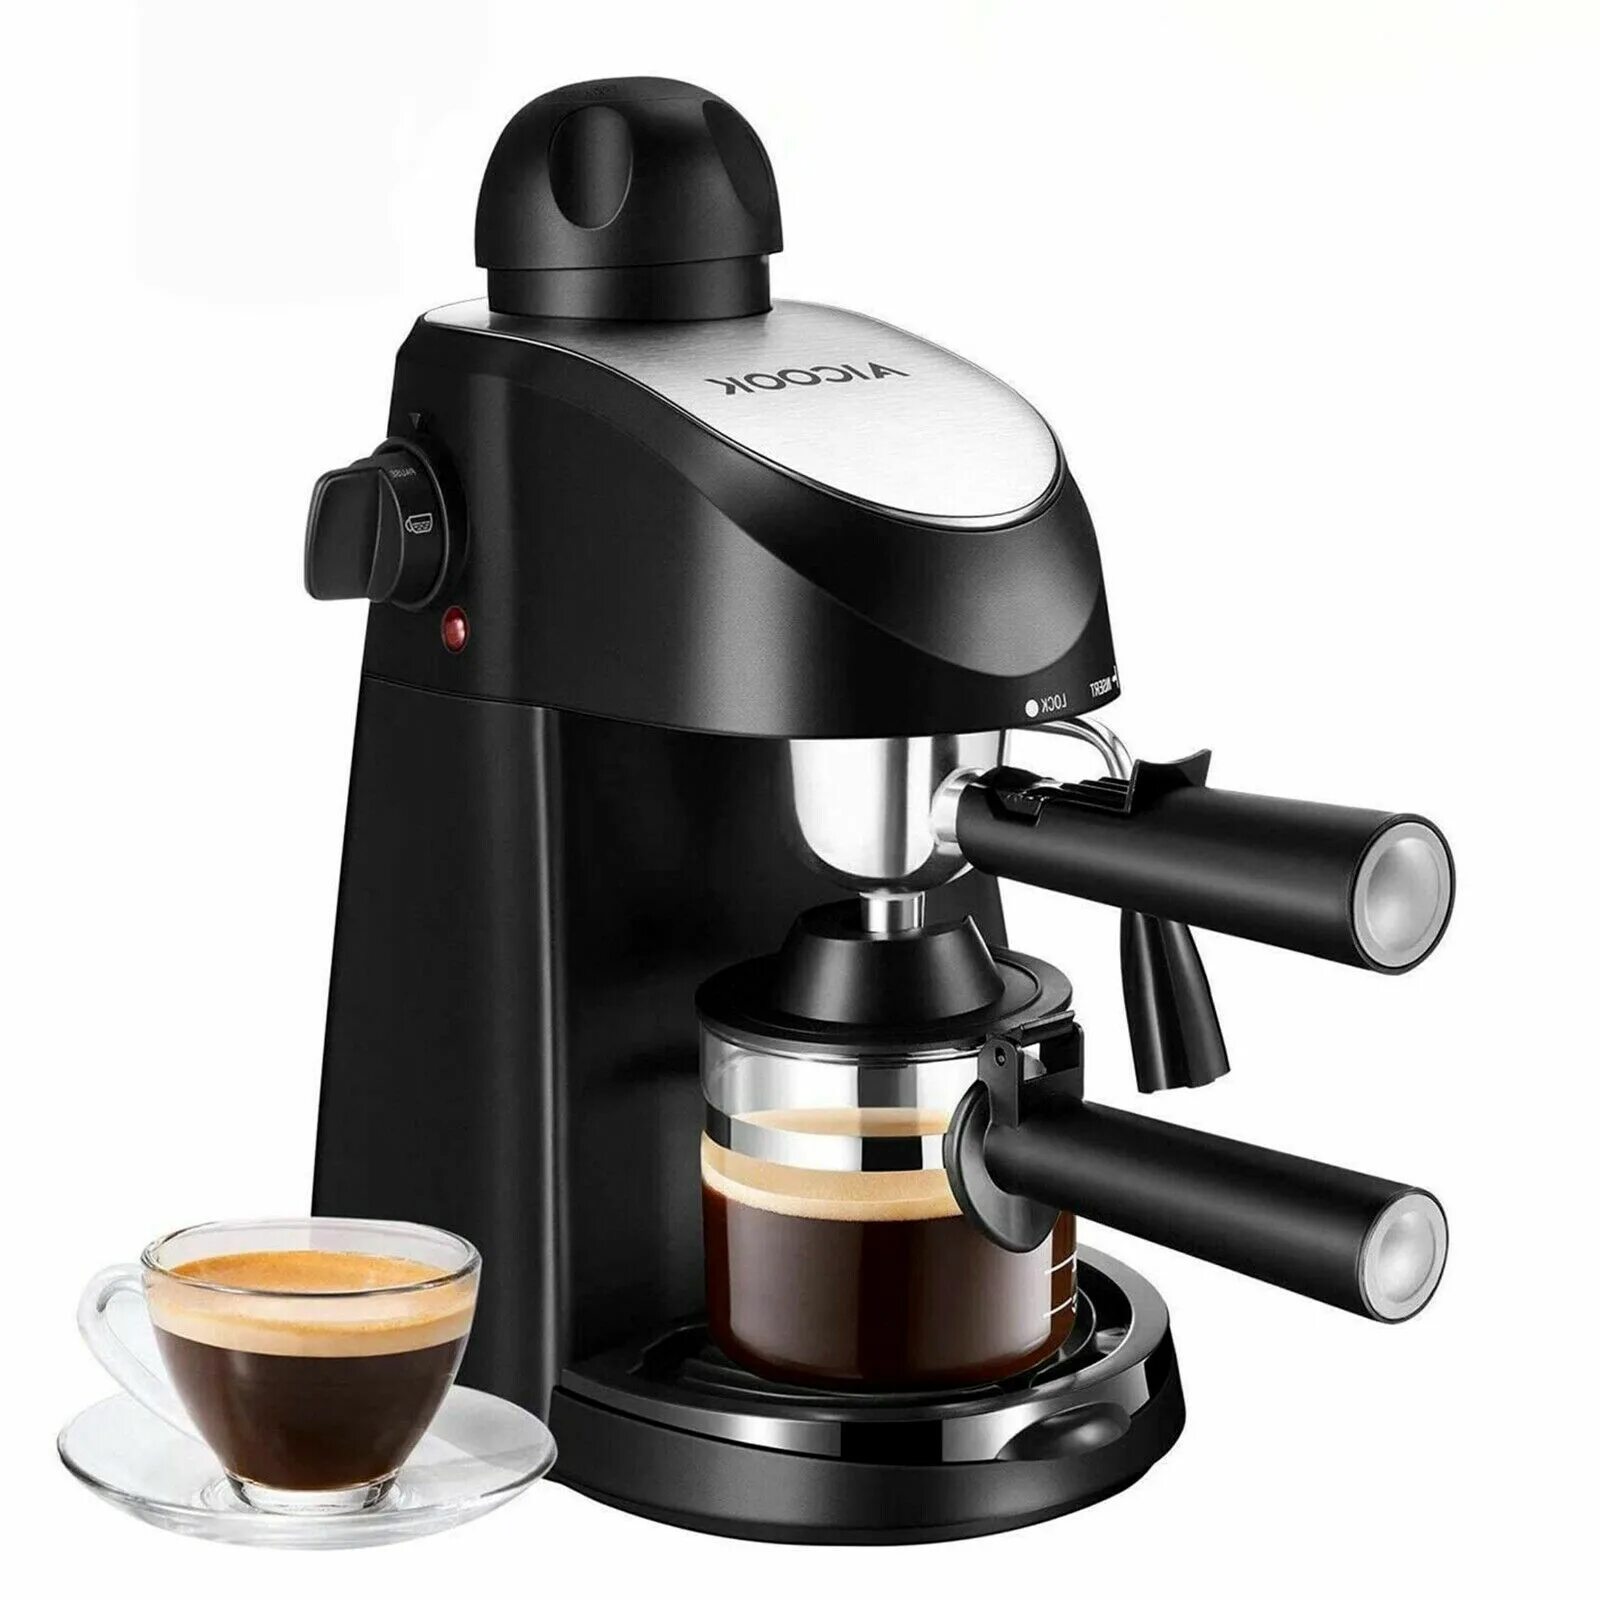 Кофе эспрессо кофемашины. Кофемашина Espresso Cappuccino. Кофемашина Espresso Coffee maker. Espresso Machine от 9barista. Steam Espresso кофеварка.